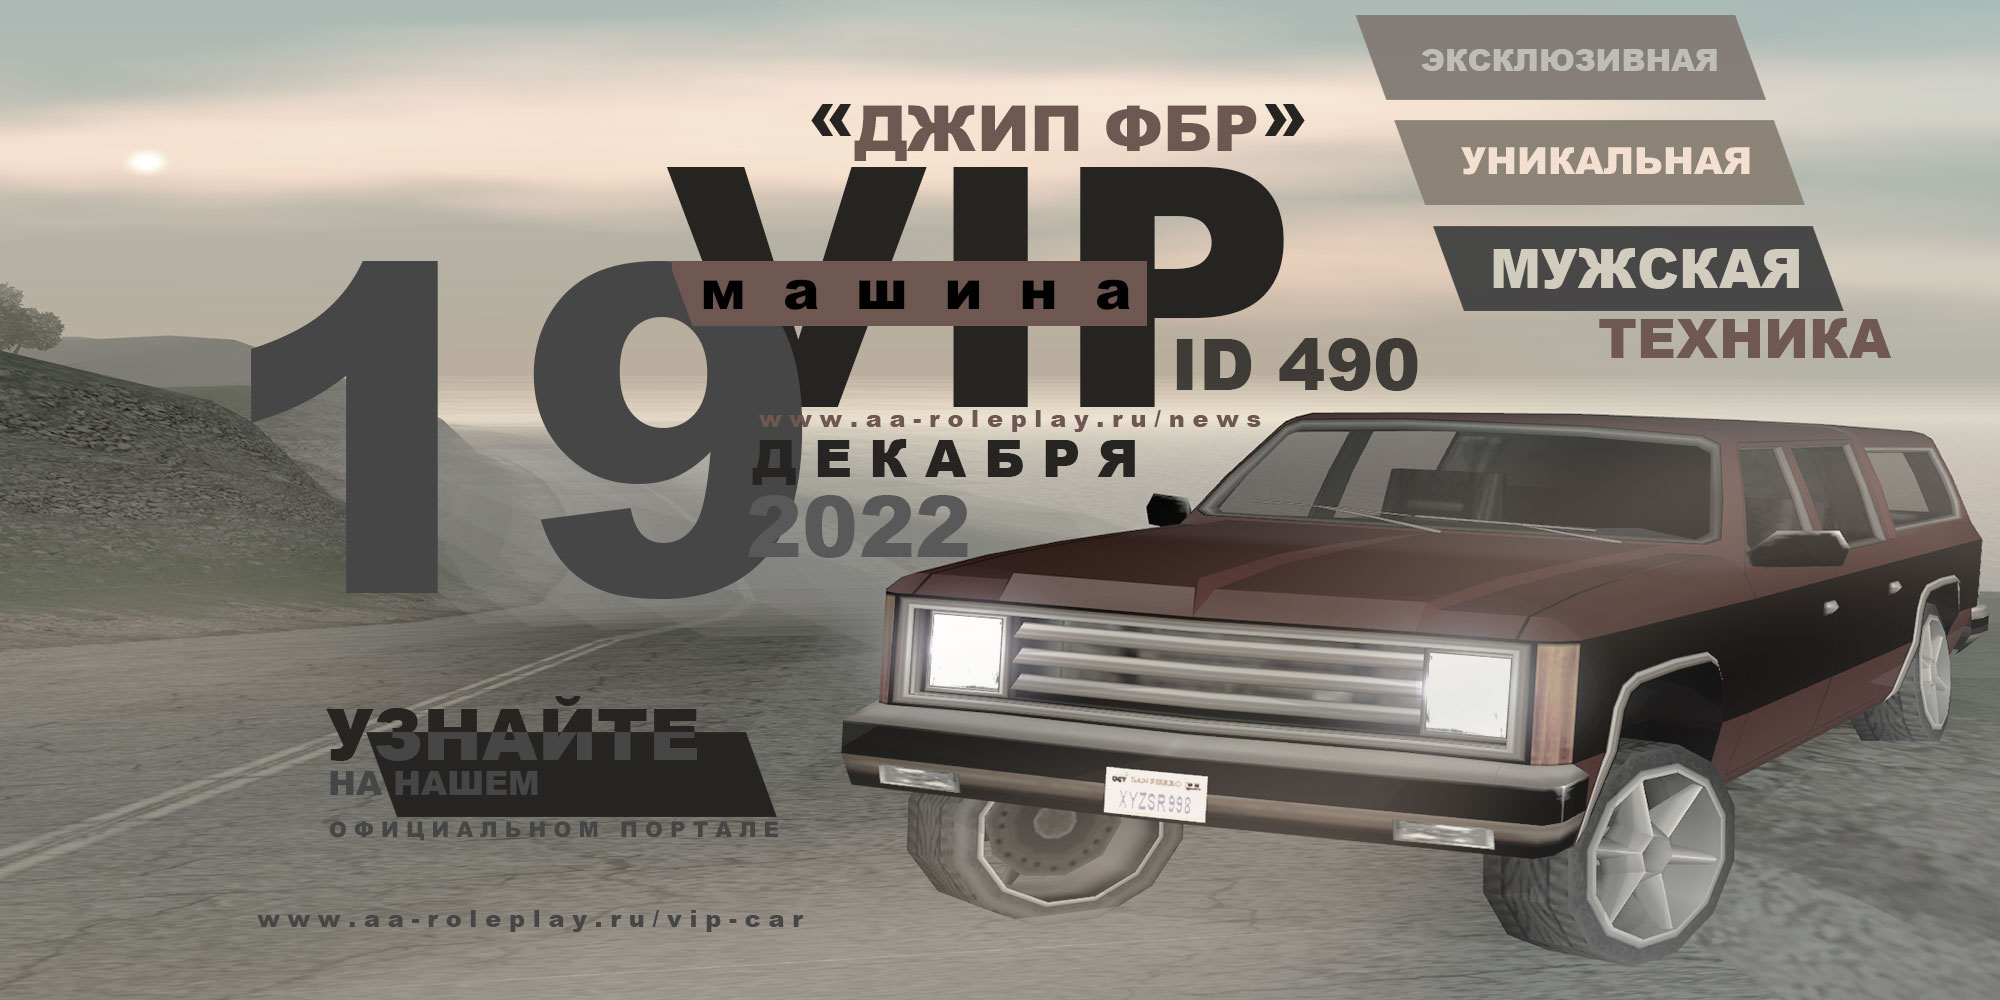 Постер обновления - Самый эксклюзивный длиннобазный Джип ФБР - теперь доступен среди VIP-машин (222.06 КБ) Просмотров: 2078